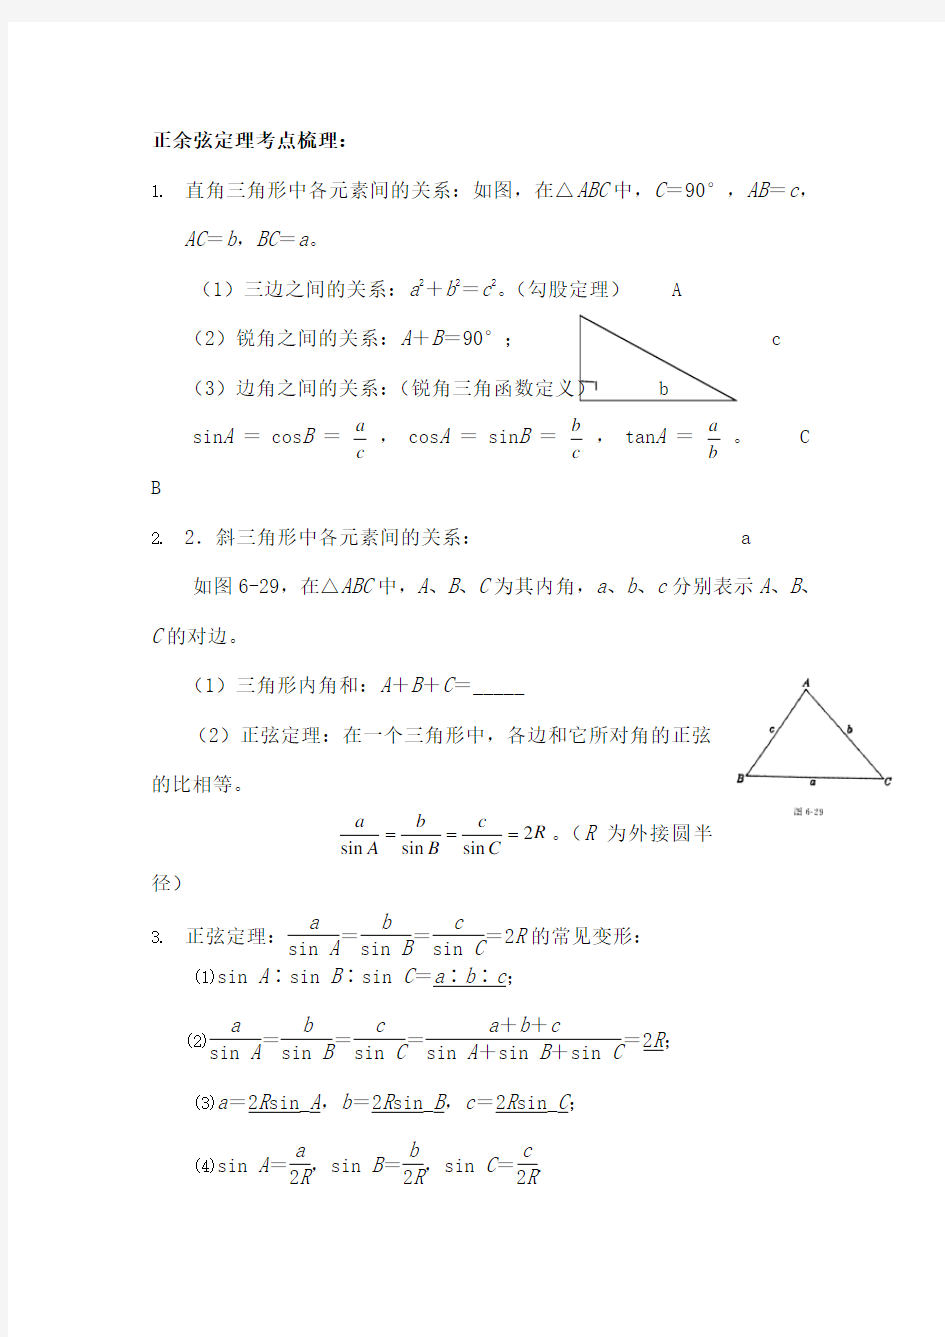 正余弦定理及解三角形有答案